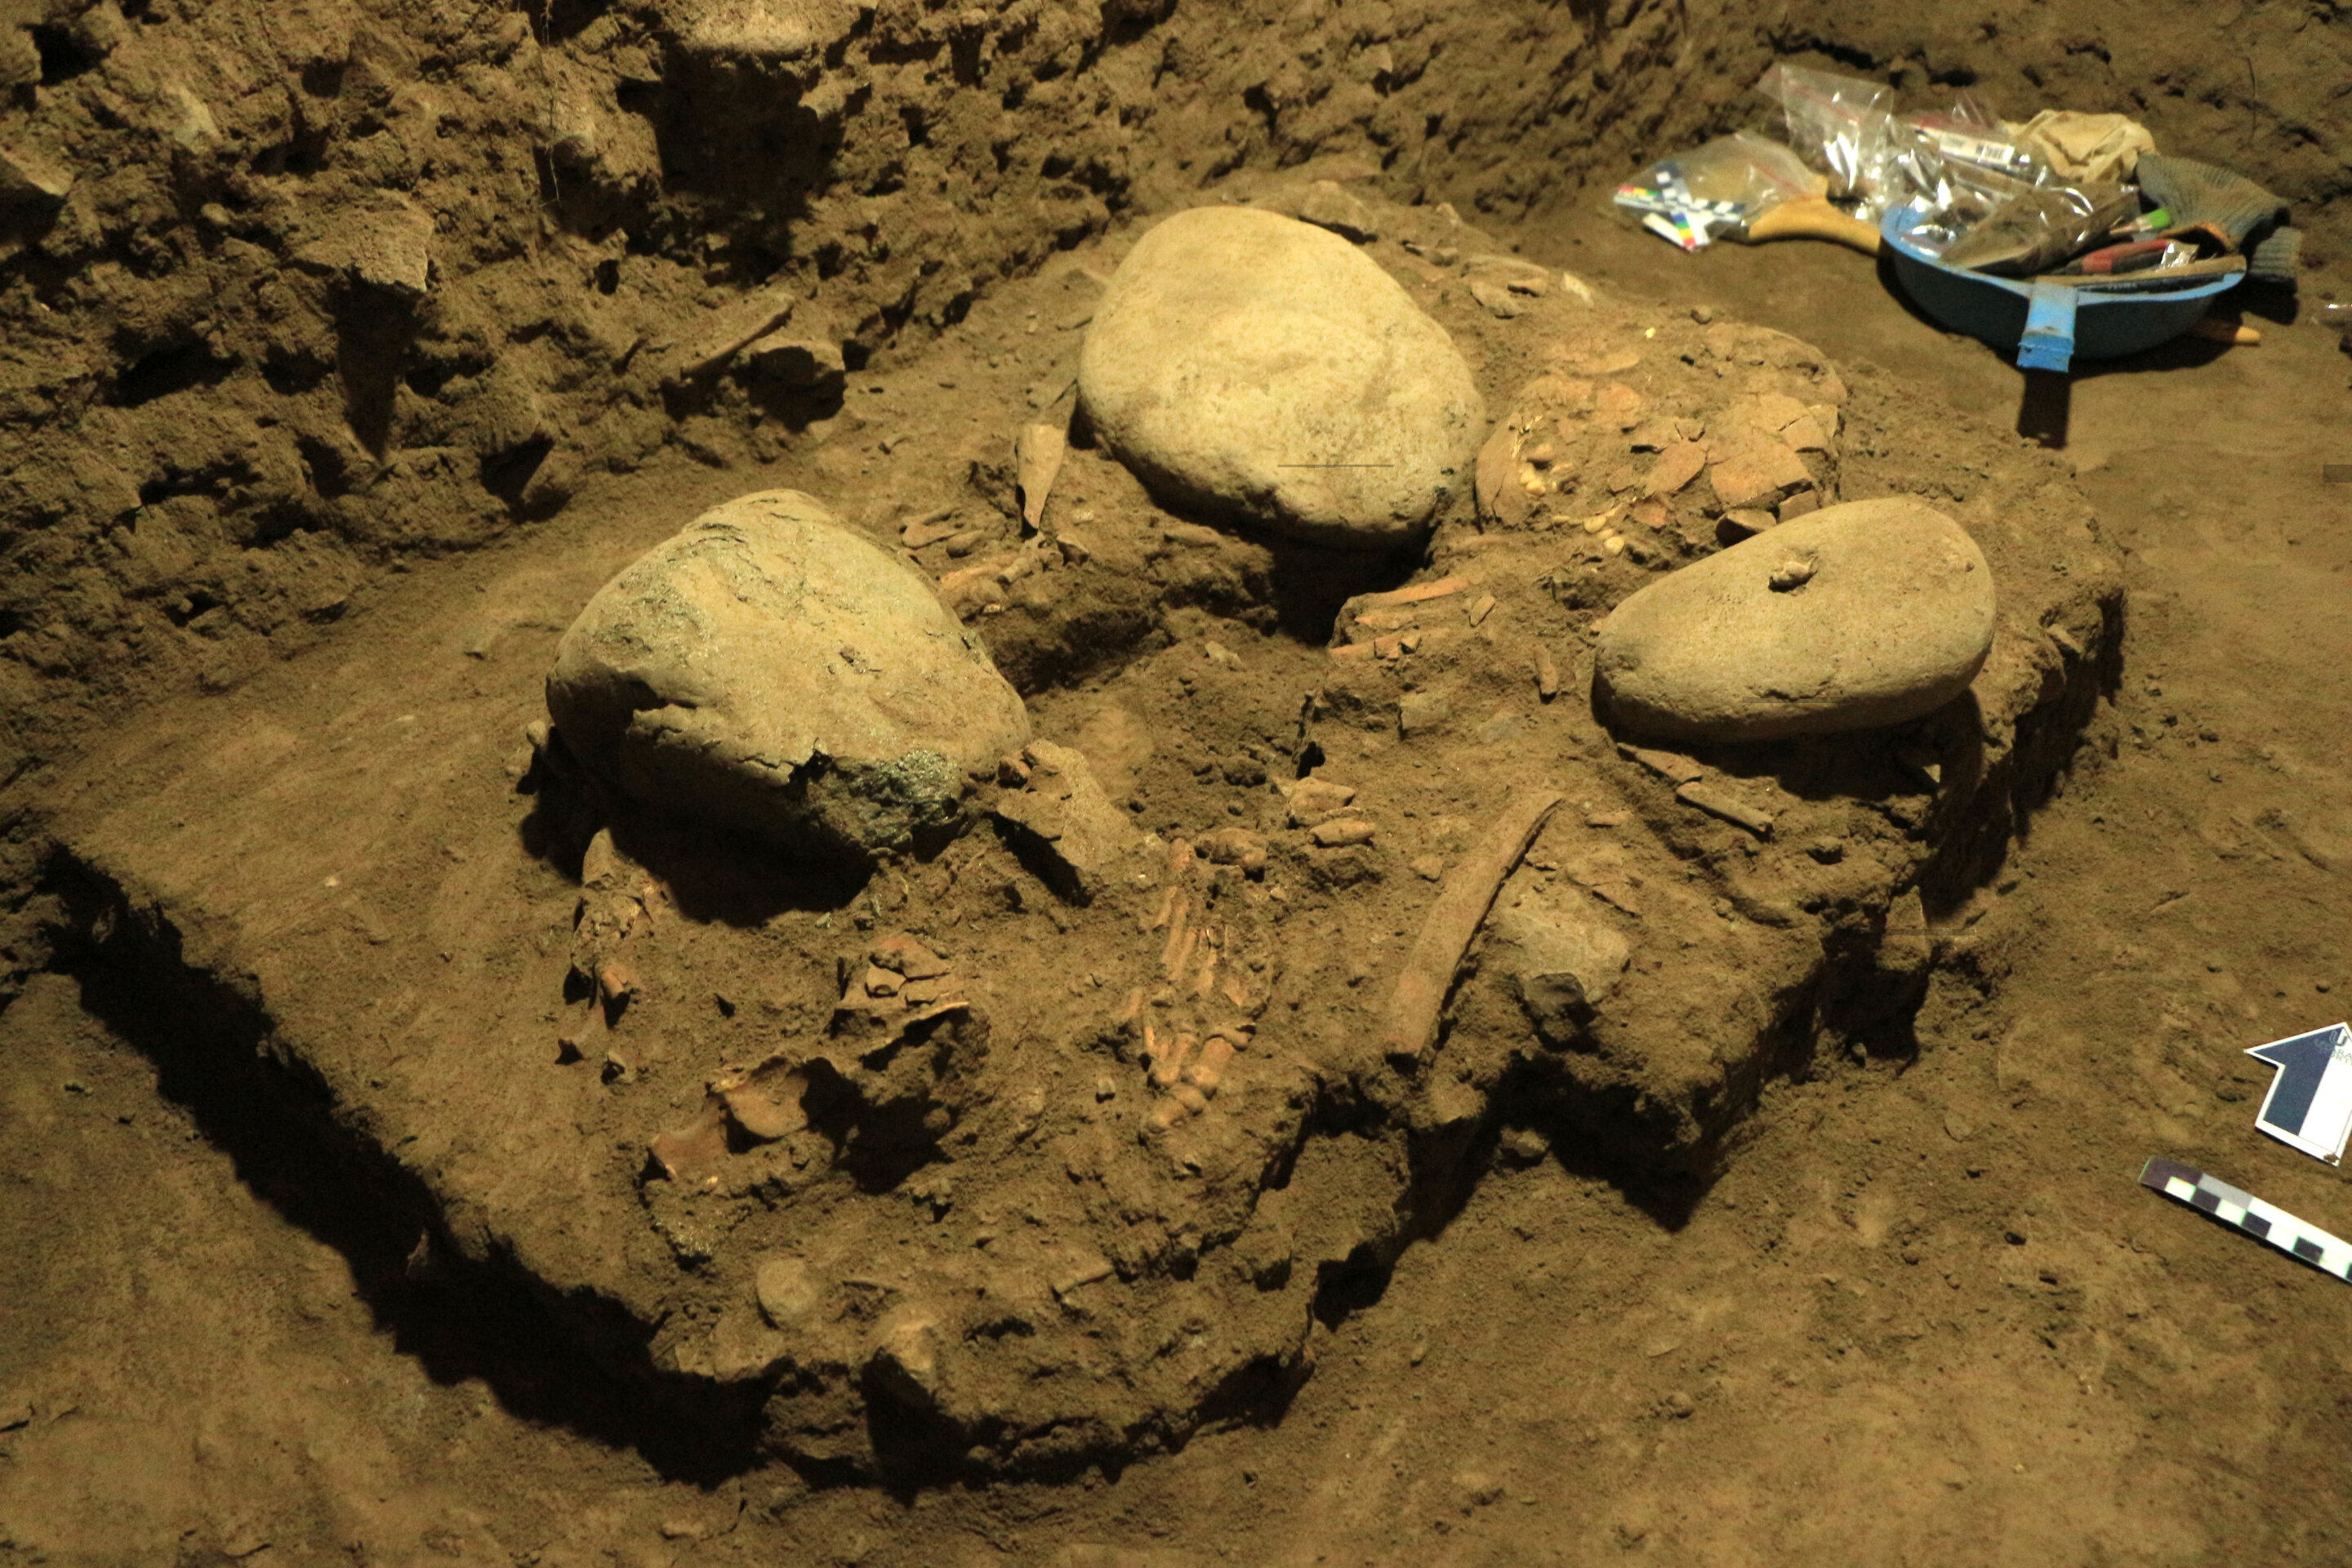 印度尼西亚苏拉威西岛发现7200年前遗骸 新型古人类“图阿莱人”有丹尼索瓦人基因